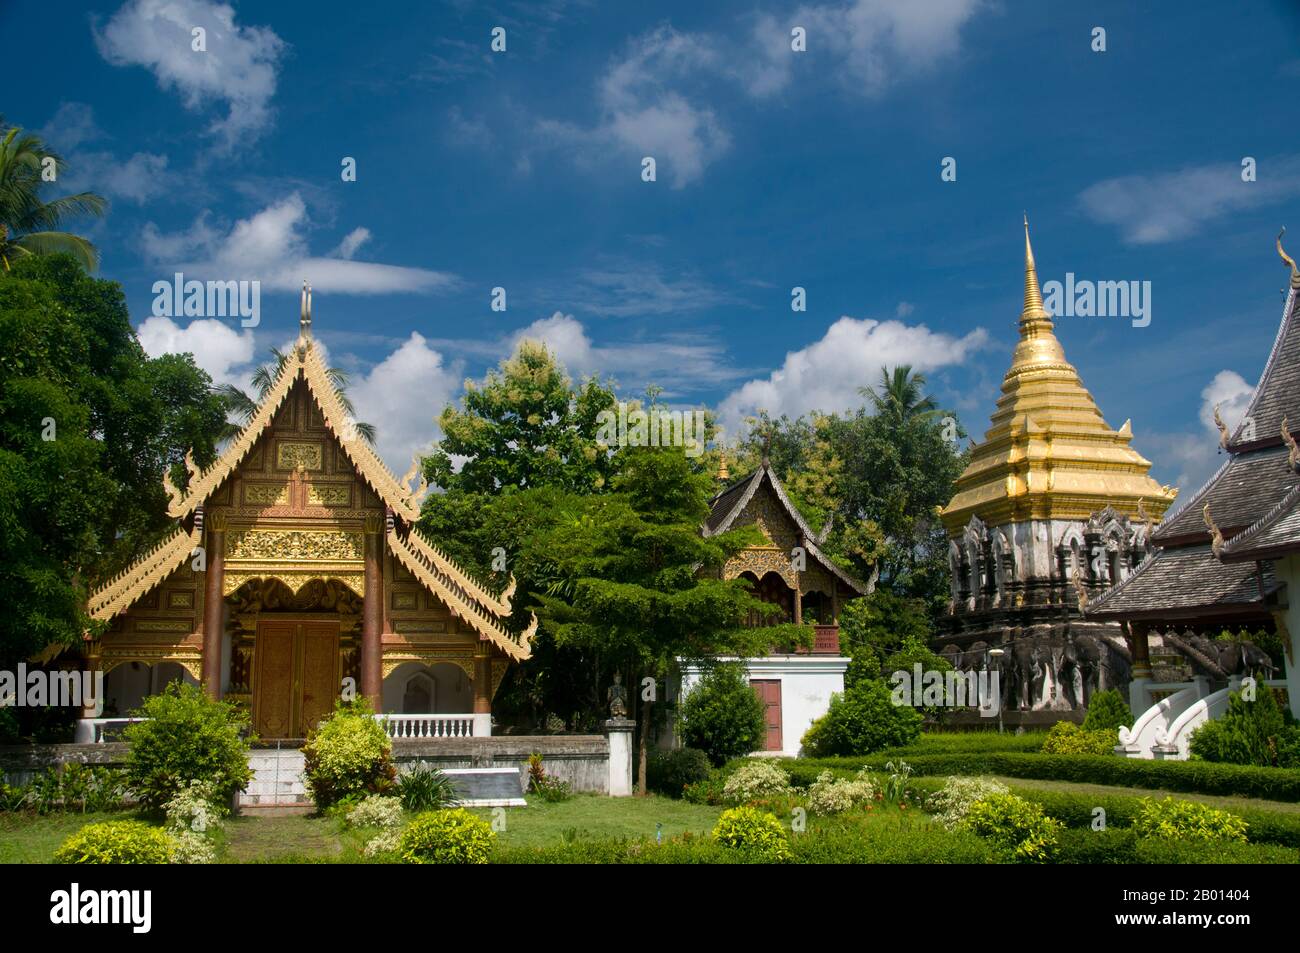 VThailand : Ubosot (salle d'ordination), ho trai (bibliothèque) et chedi, Wat Chiang Man, Chiang Mai. Wat Chiang Man (Chiang Mun) a été construit en 1297 EC et est considéré comme le plus ancien temple de Chiang Mai. Il a été construit sur l'endroit qui avait été utilisé par le roi Mangrai comme camp pendant la construction de sa nouvelle capitale Chiang Mai. Chiang Mai (signifiant « nouvelle ville »), parfois écrit comme « Chiengmai » ou « Chiangmai », est la ville la plus importante et la plus importante sur le plan culturel du nord de la Thaïlande. Le roi Mengrai fonda la ville de Chiang Mai en 1296, et il succéda à Chiang Rai comme capitale du royaume de Lanna. Banque D'Images